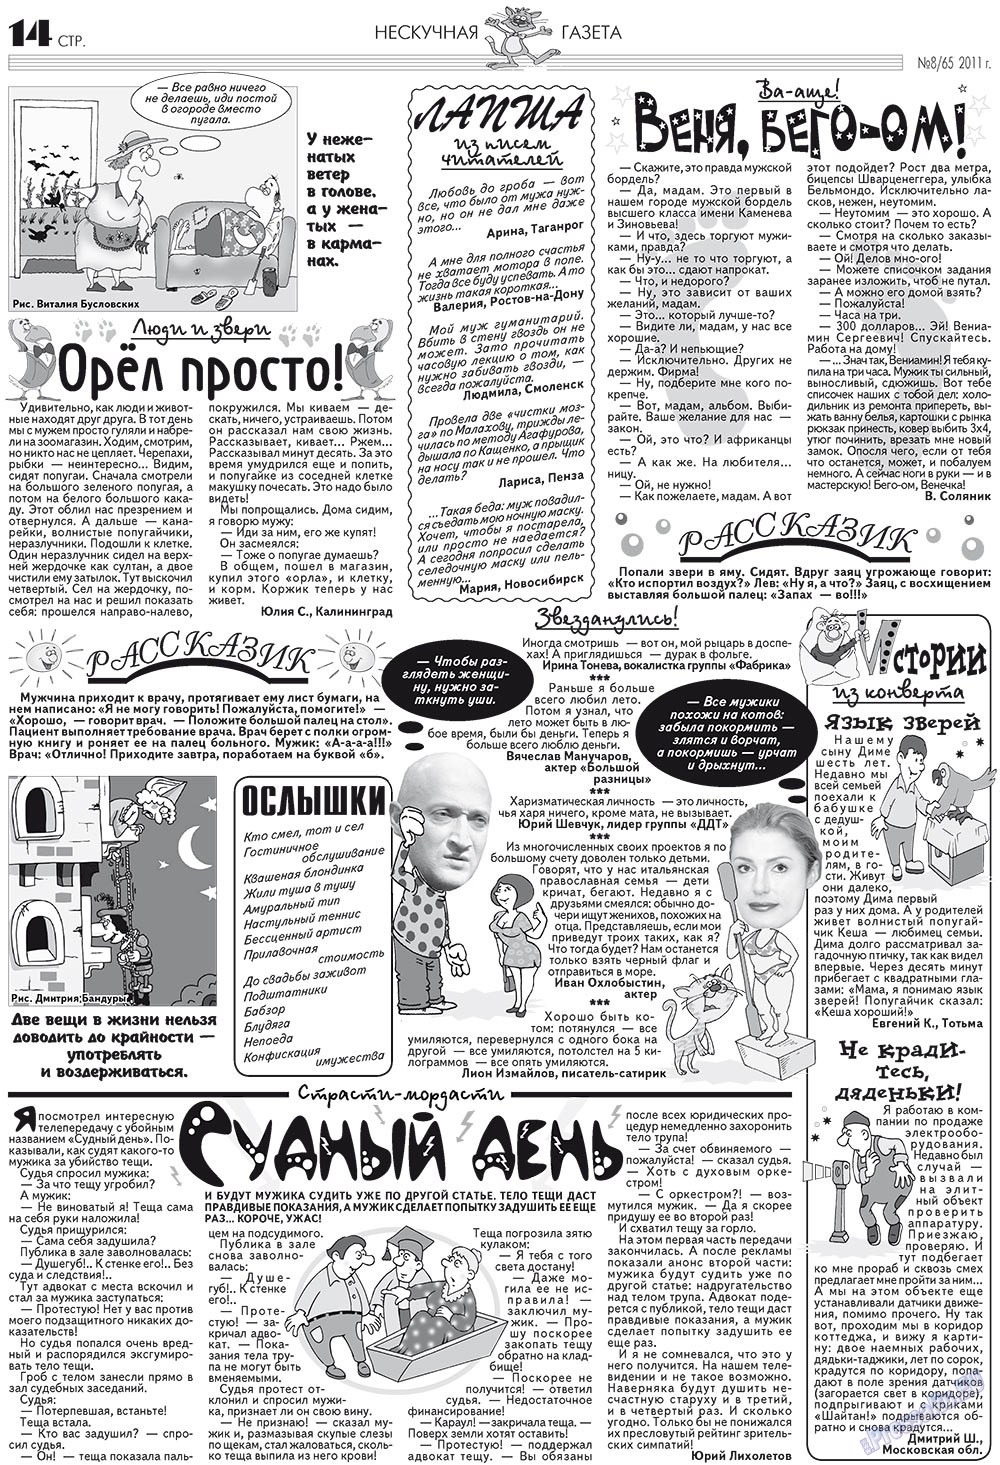 Нескучная газета (журнал). 2011 год, номер 8, стр. 14